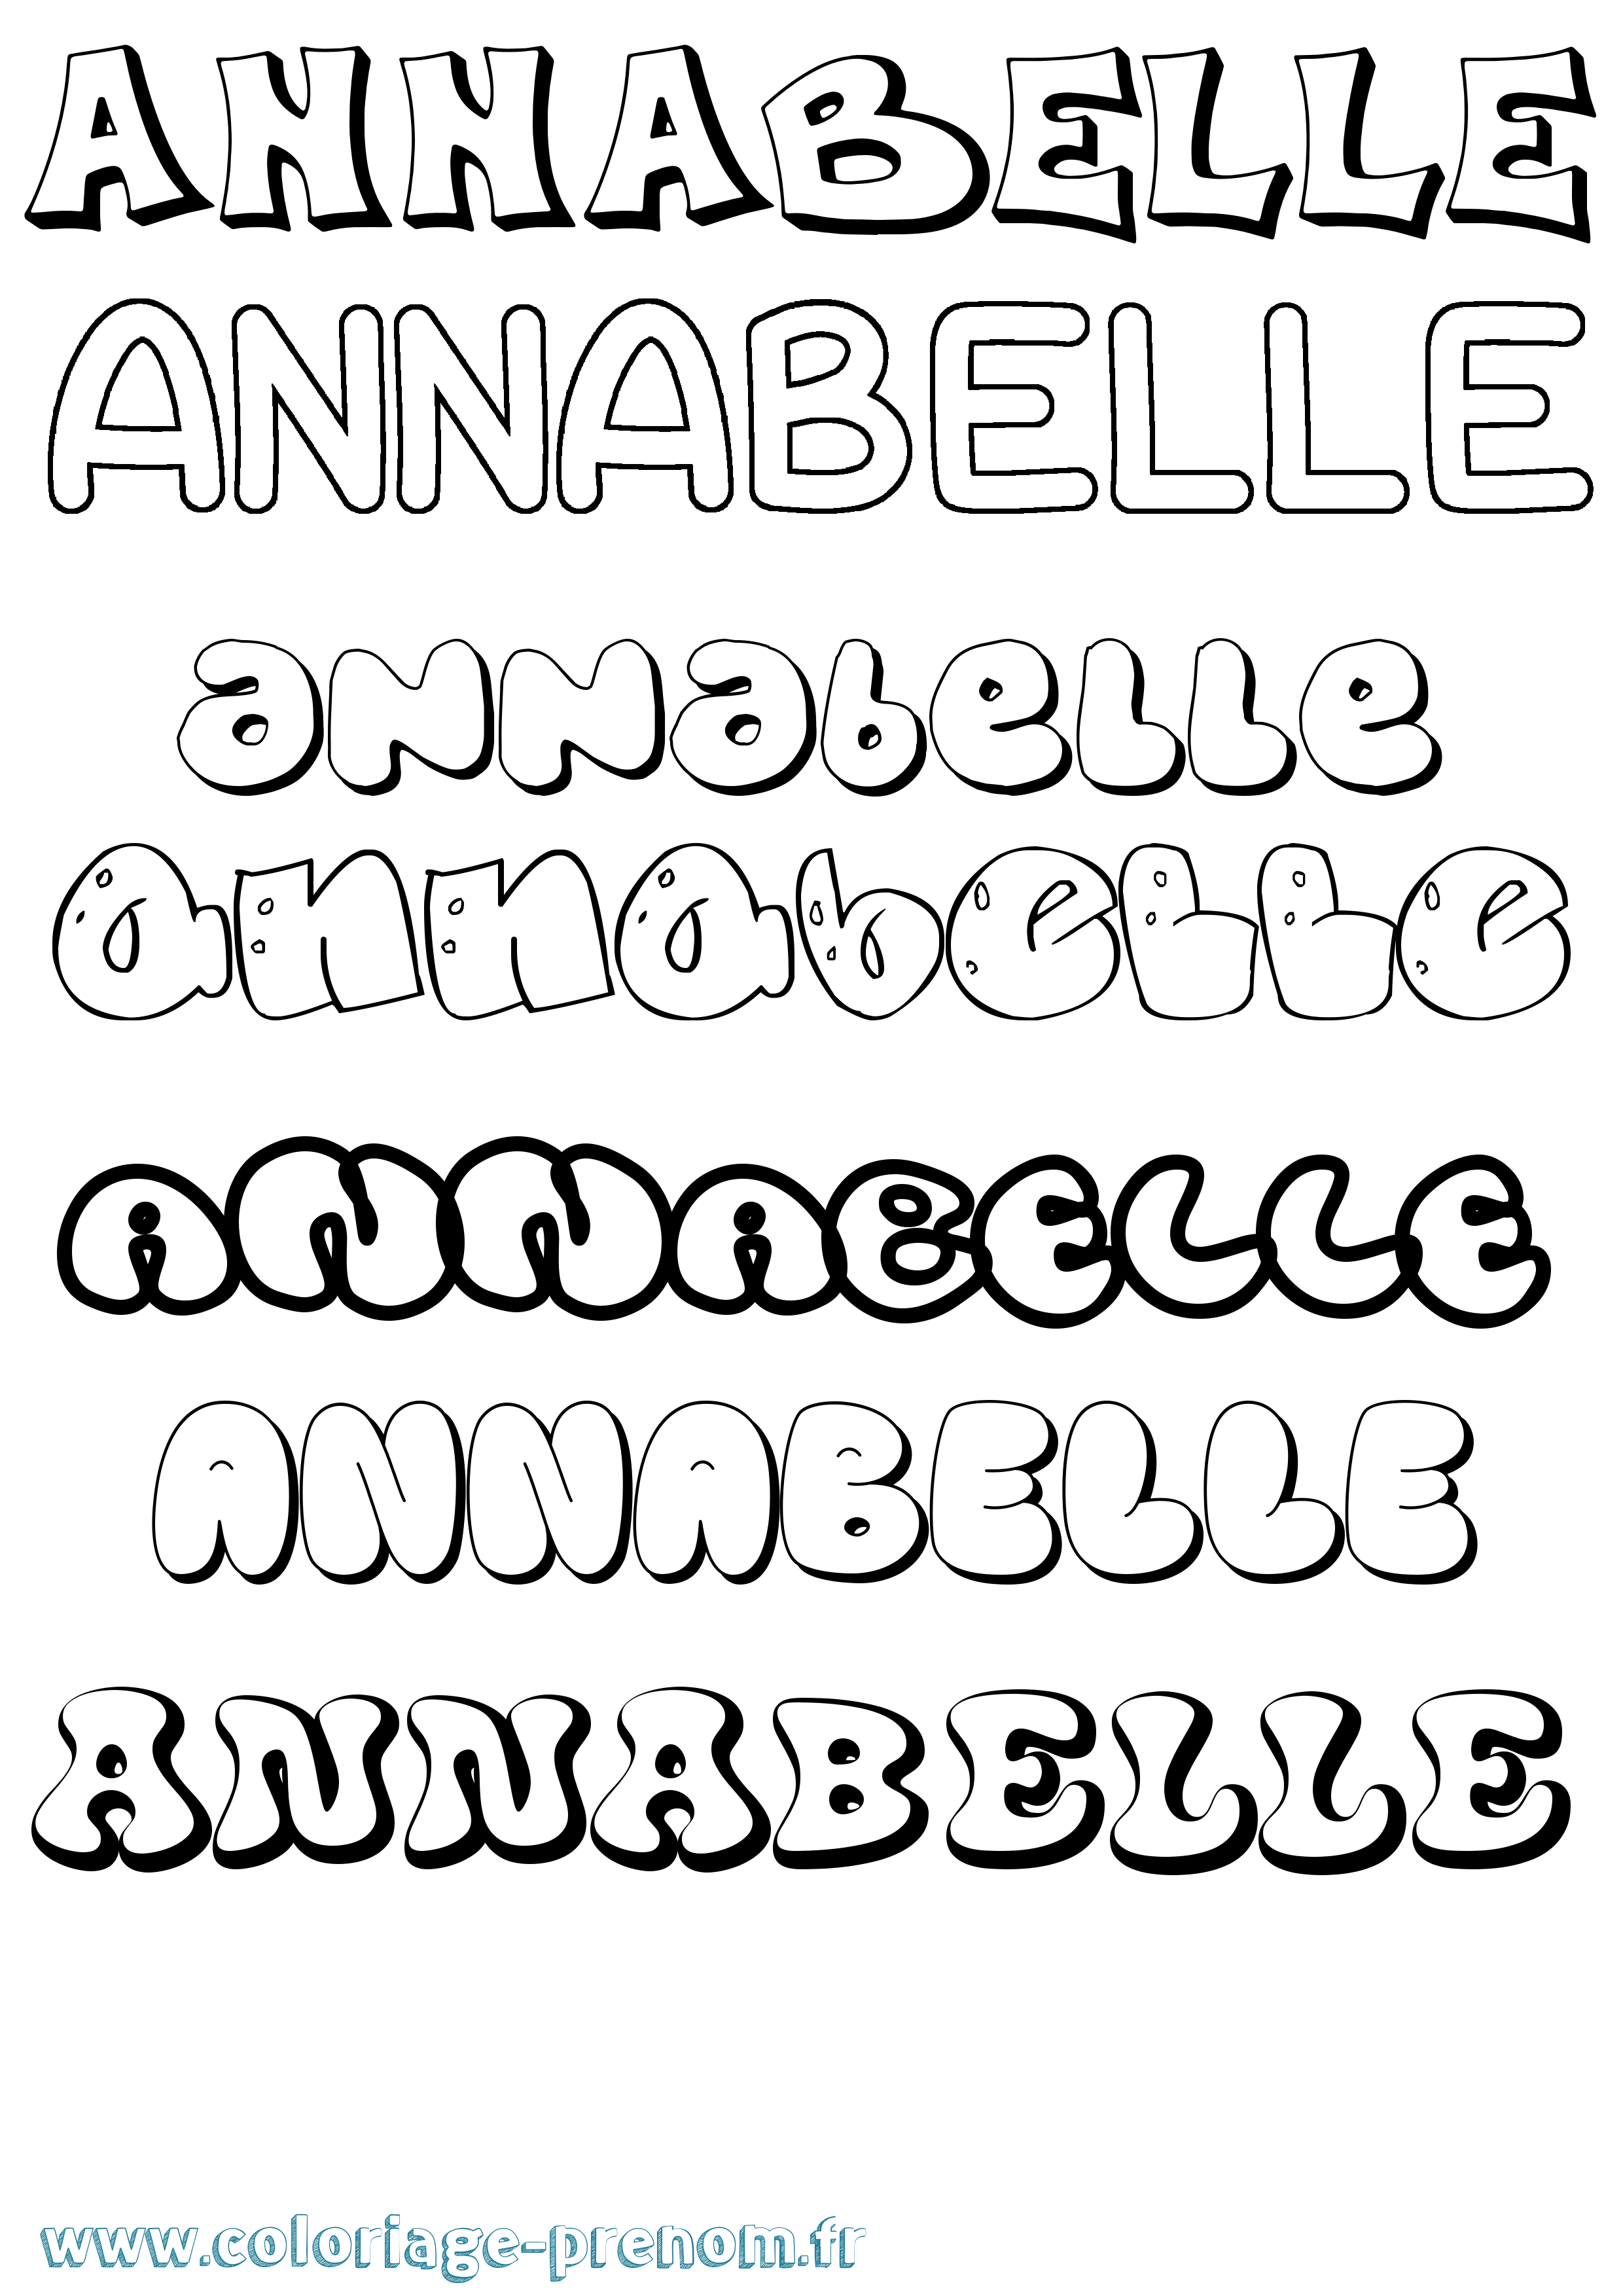 Coloriage prénom Annabelle Bubble